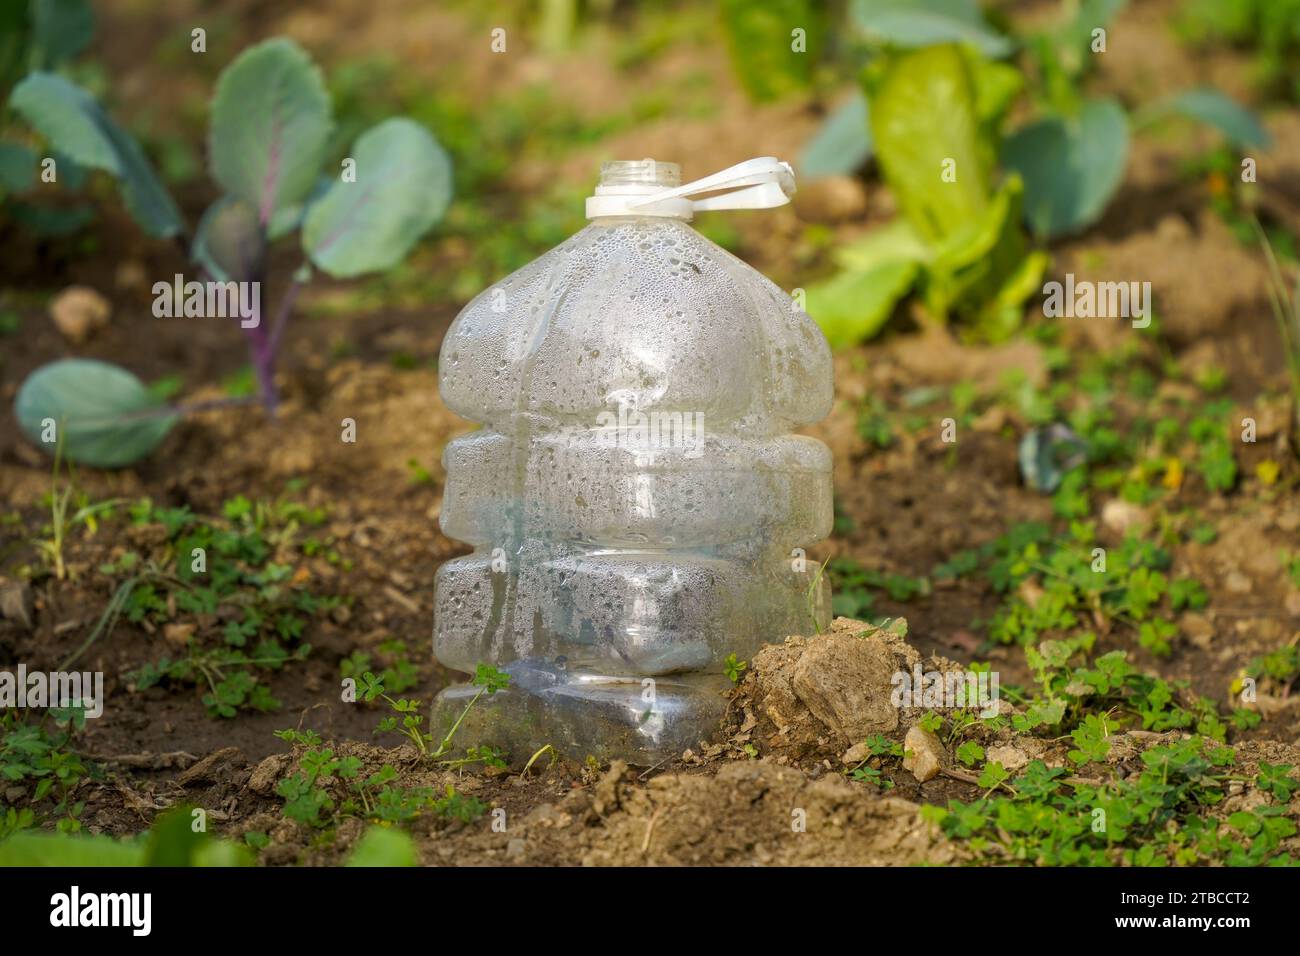 Chou dans le sol dans le potager, avec bouteille en plastique autour pour protéger. Espagne. Banque D'Images